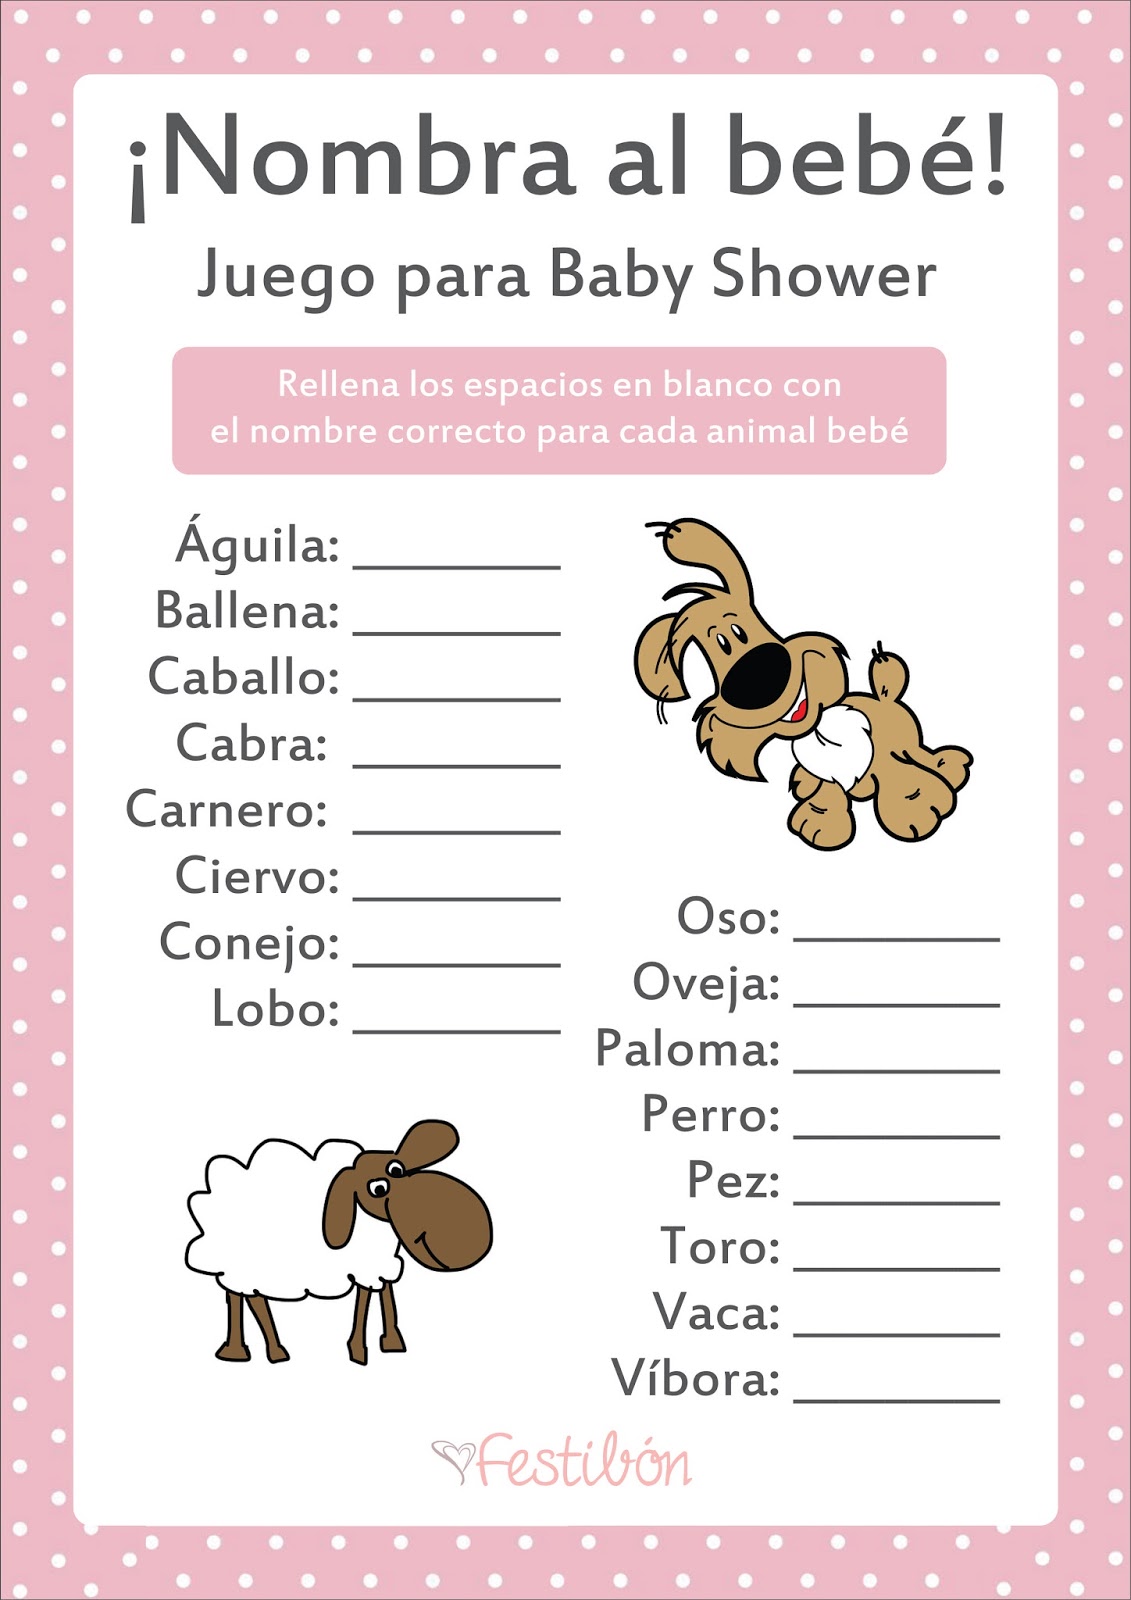 52 Juegos Baby Shower Nombres Juegos Shower Nombres Baby Juegos Baby